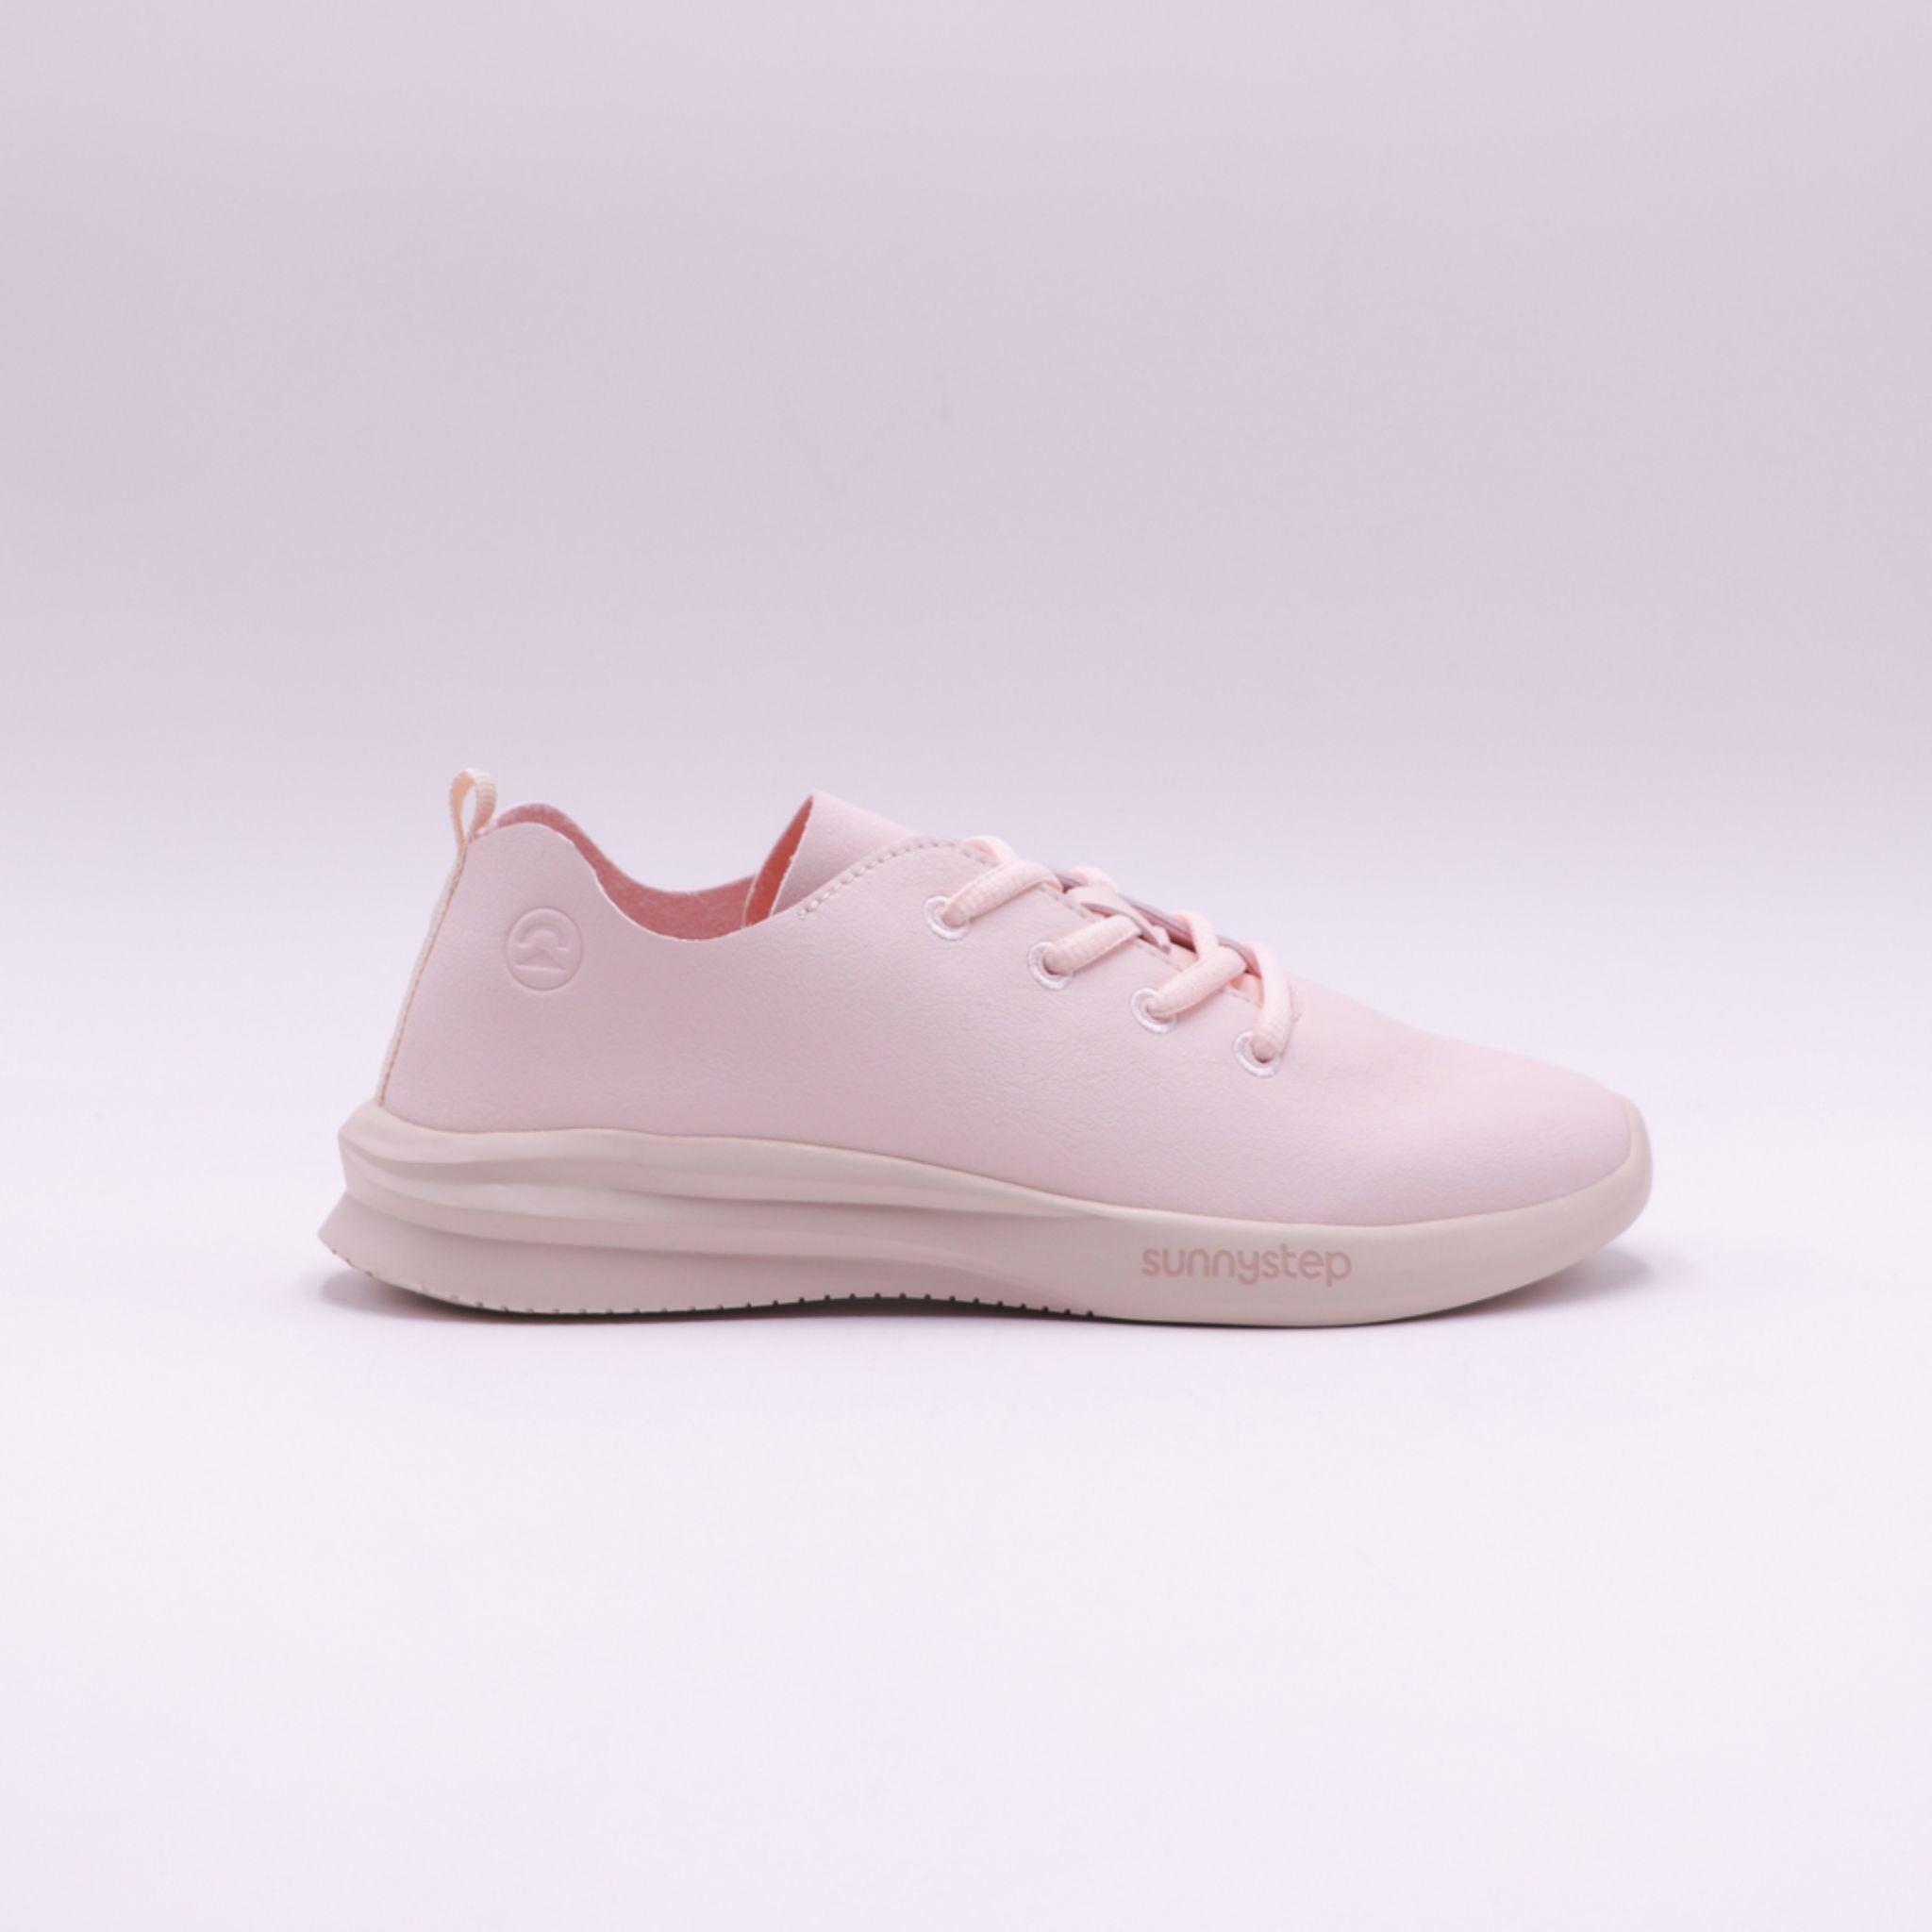 Sunnystep Sakura Balance Runner (Sneaker)